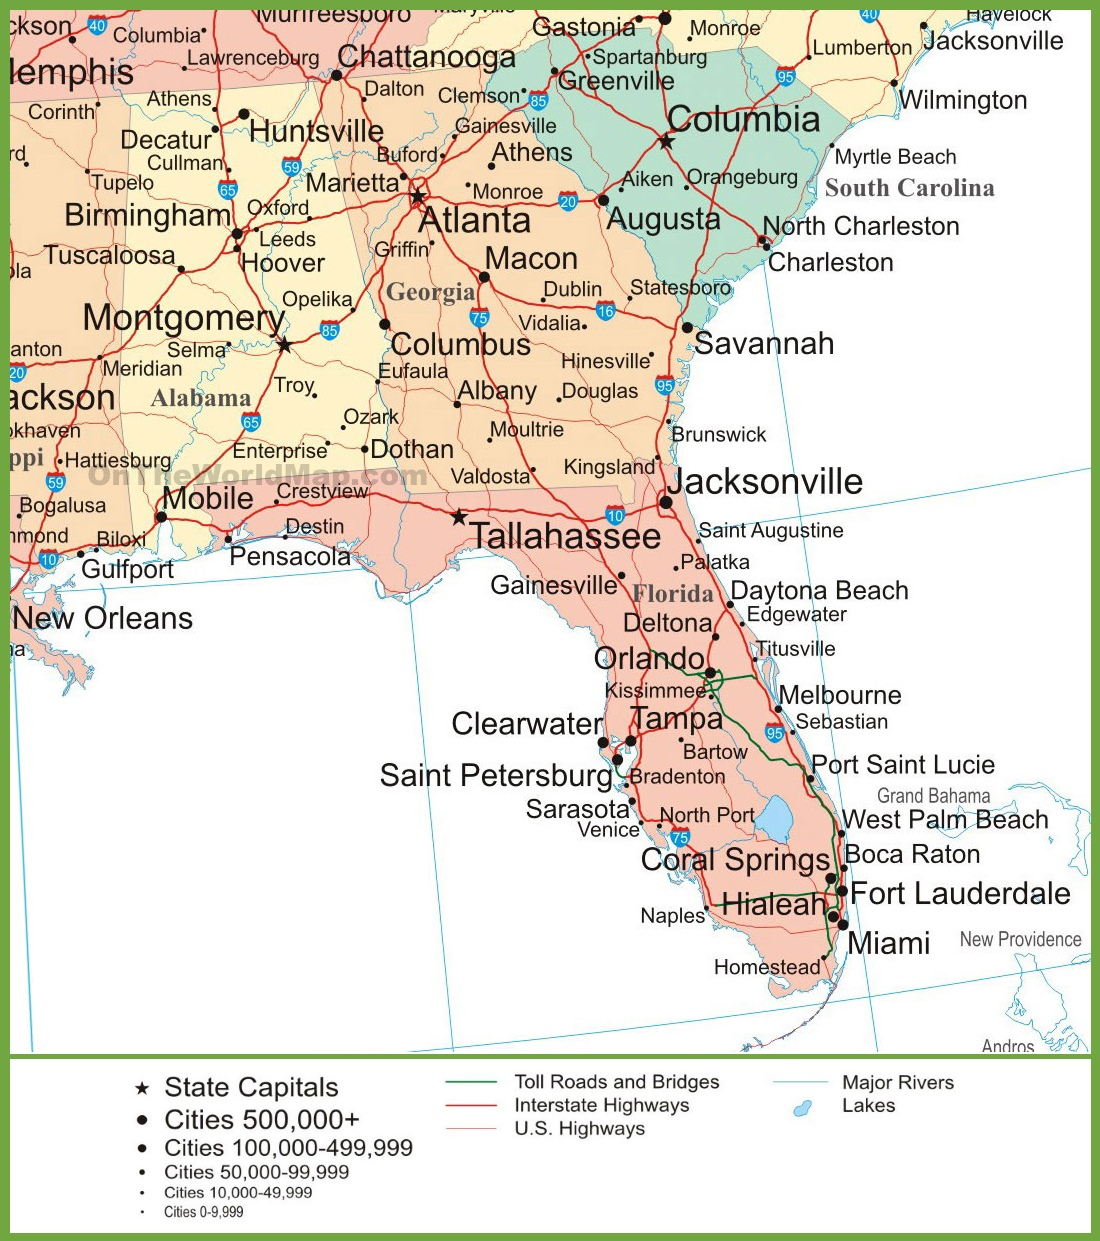 Map Of Alabama, Georgia And Florida - Map Of Alabama And Florida Beaches